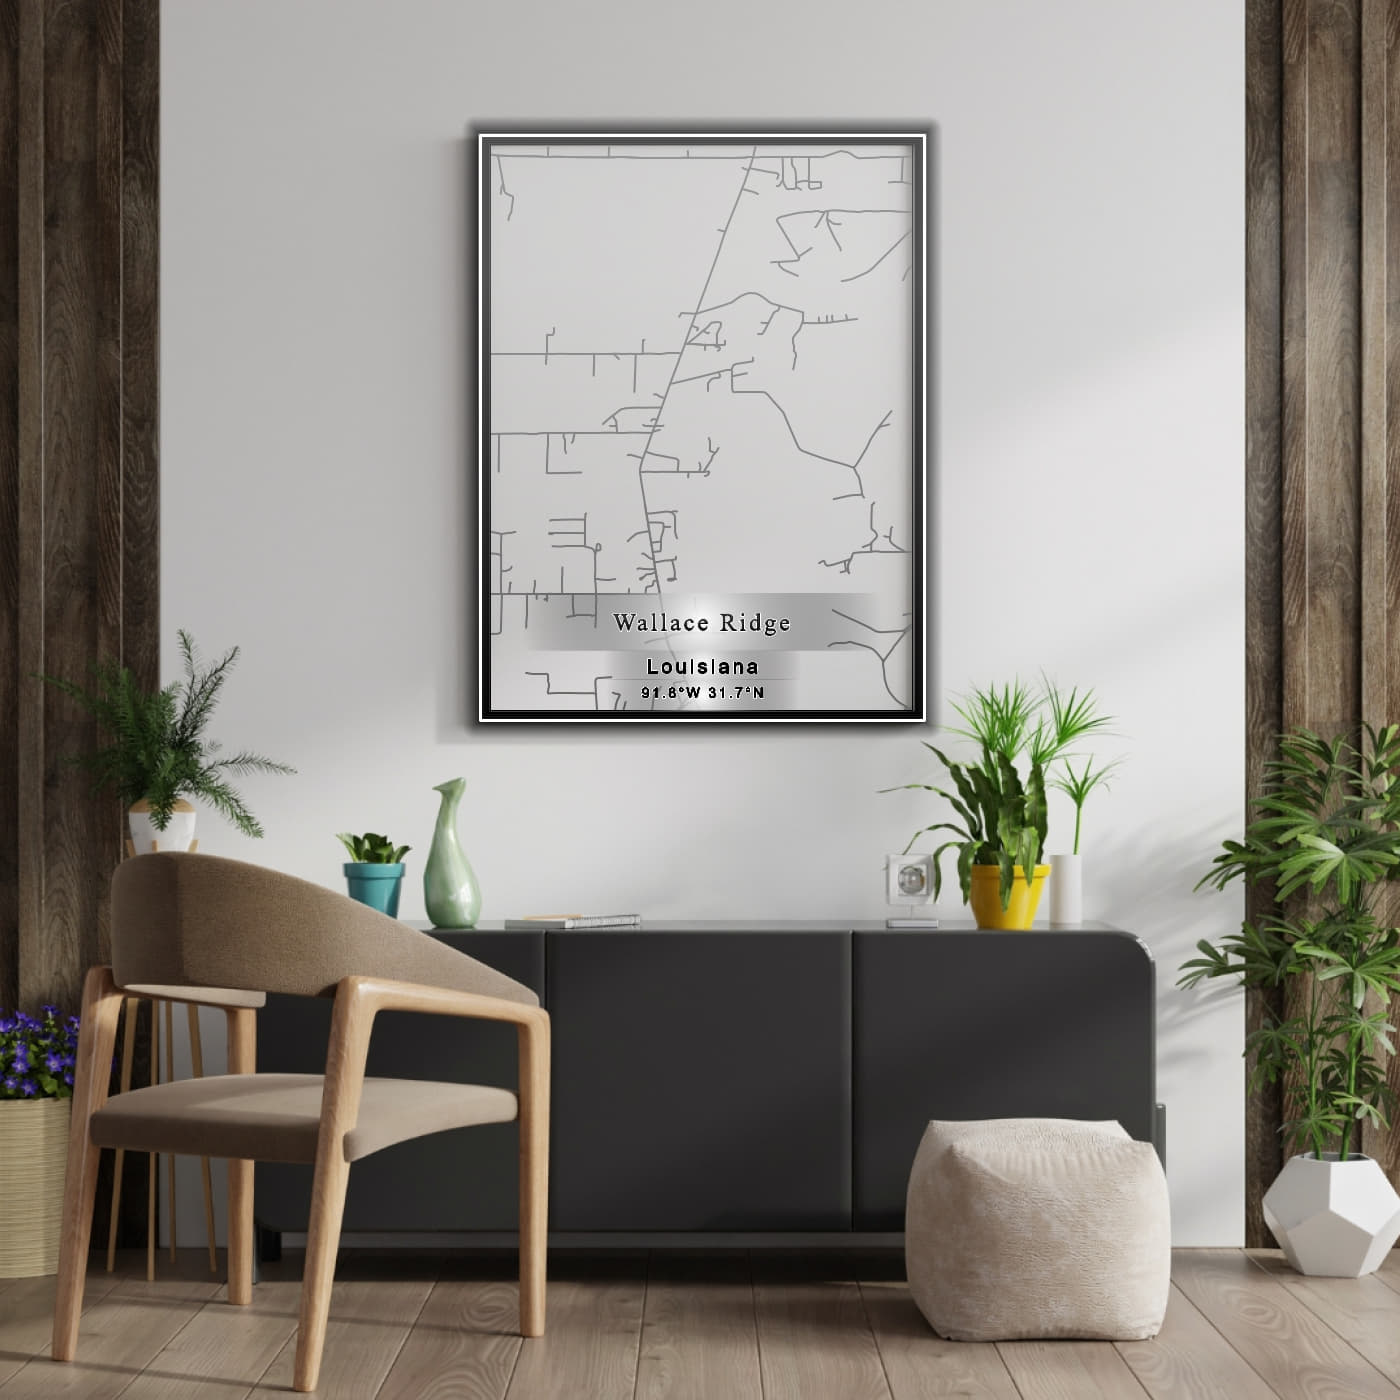 ROAD MAP OF WALLACE RIDGE, LOUISIANA BY MAPBAKES